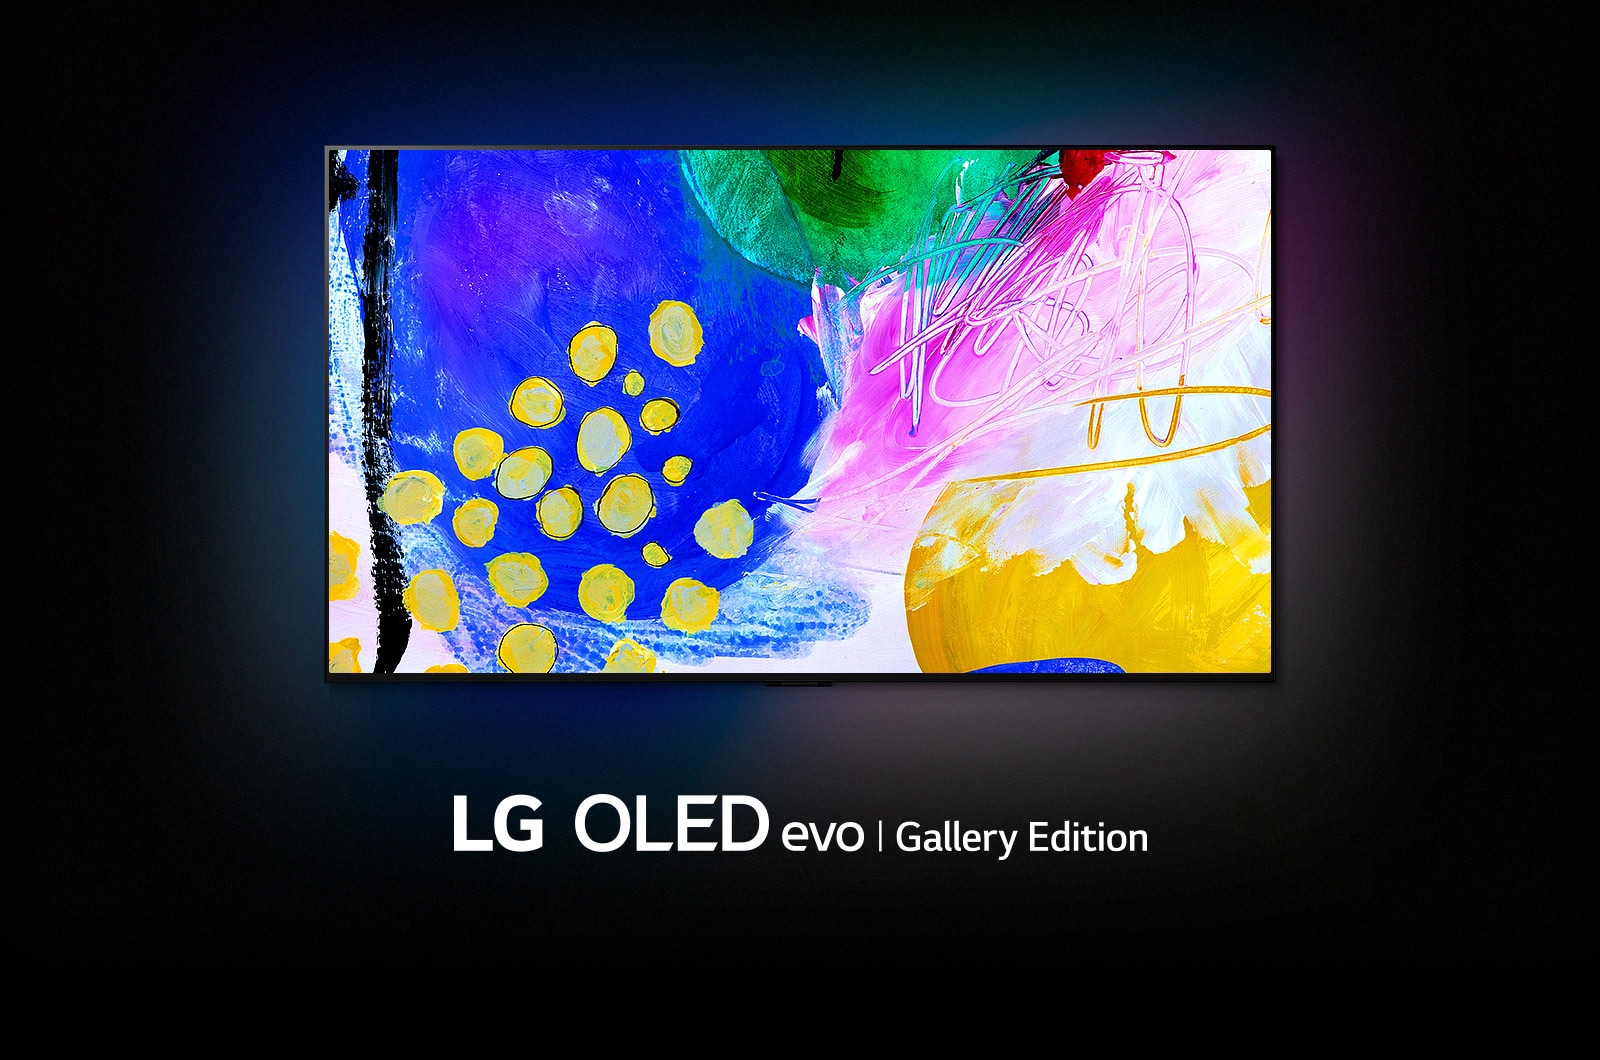 Wyświetlacz telewizora LG OLED pokazuje abstrakcyjny obraz kolorowych kwiatów